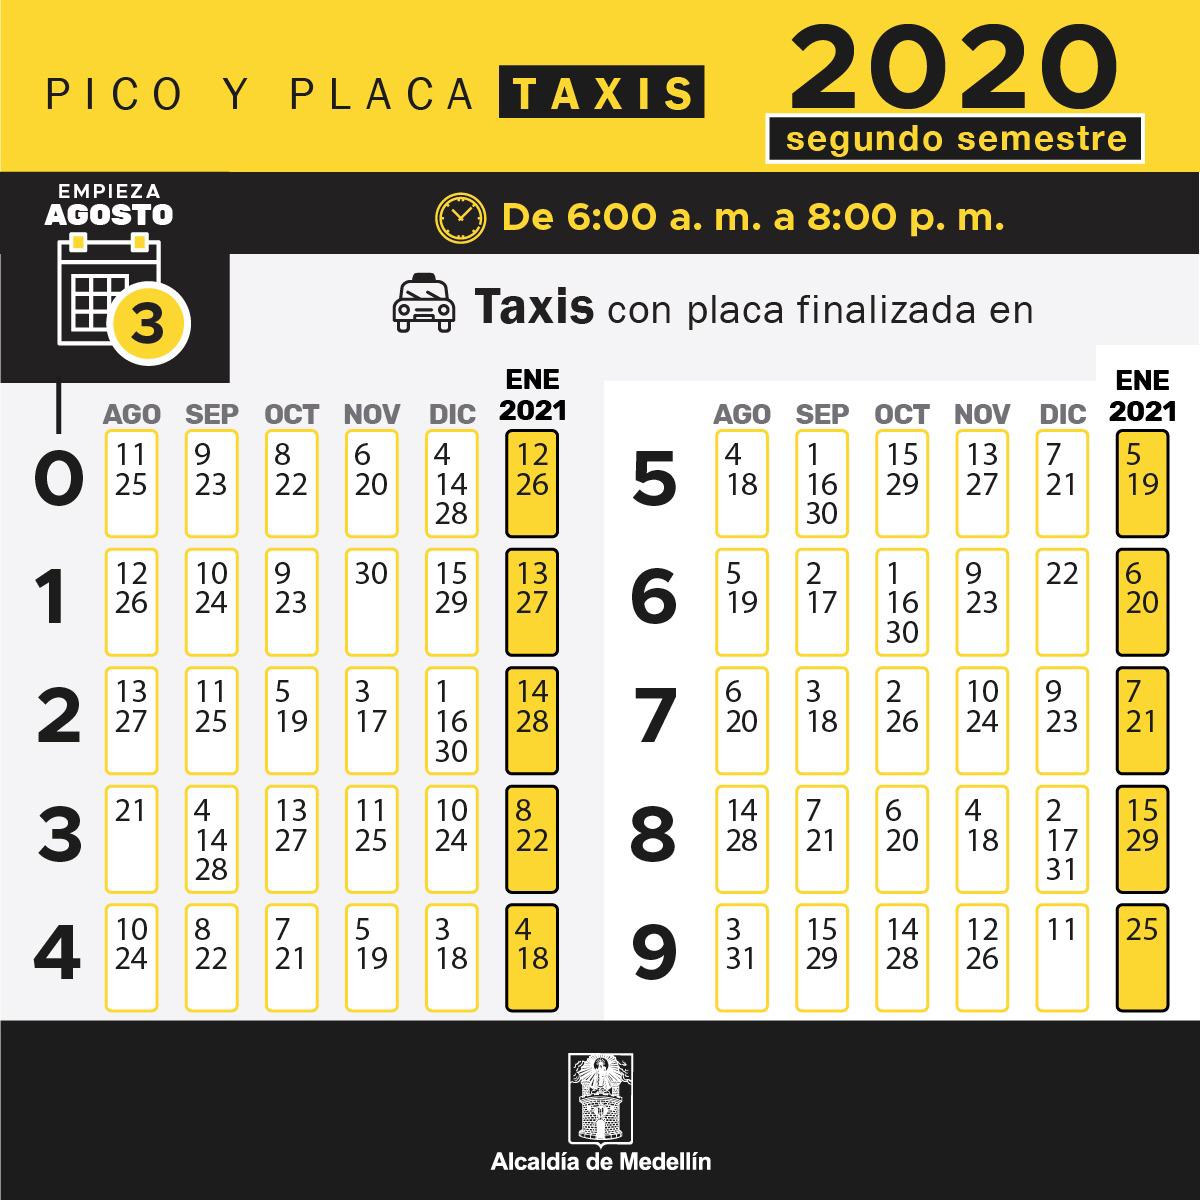 A partir del 3 de agosto rotará el Pico y Placa para taxis en Medellín